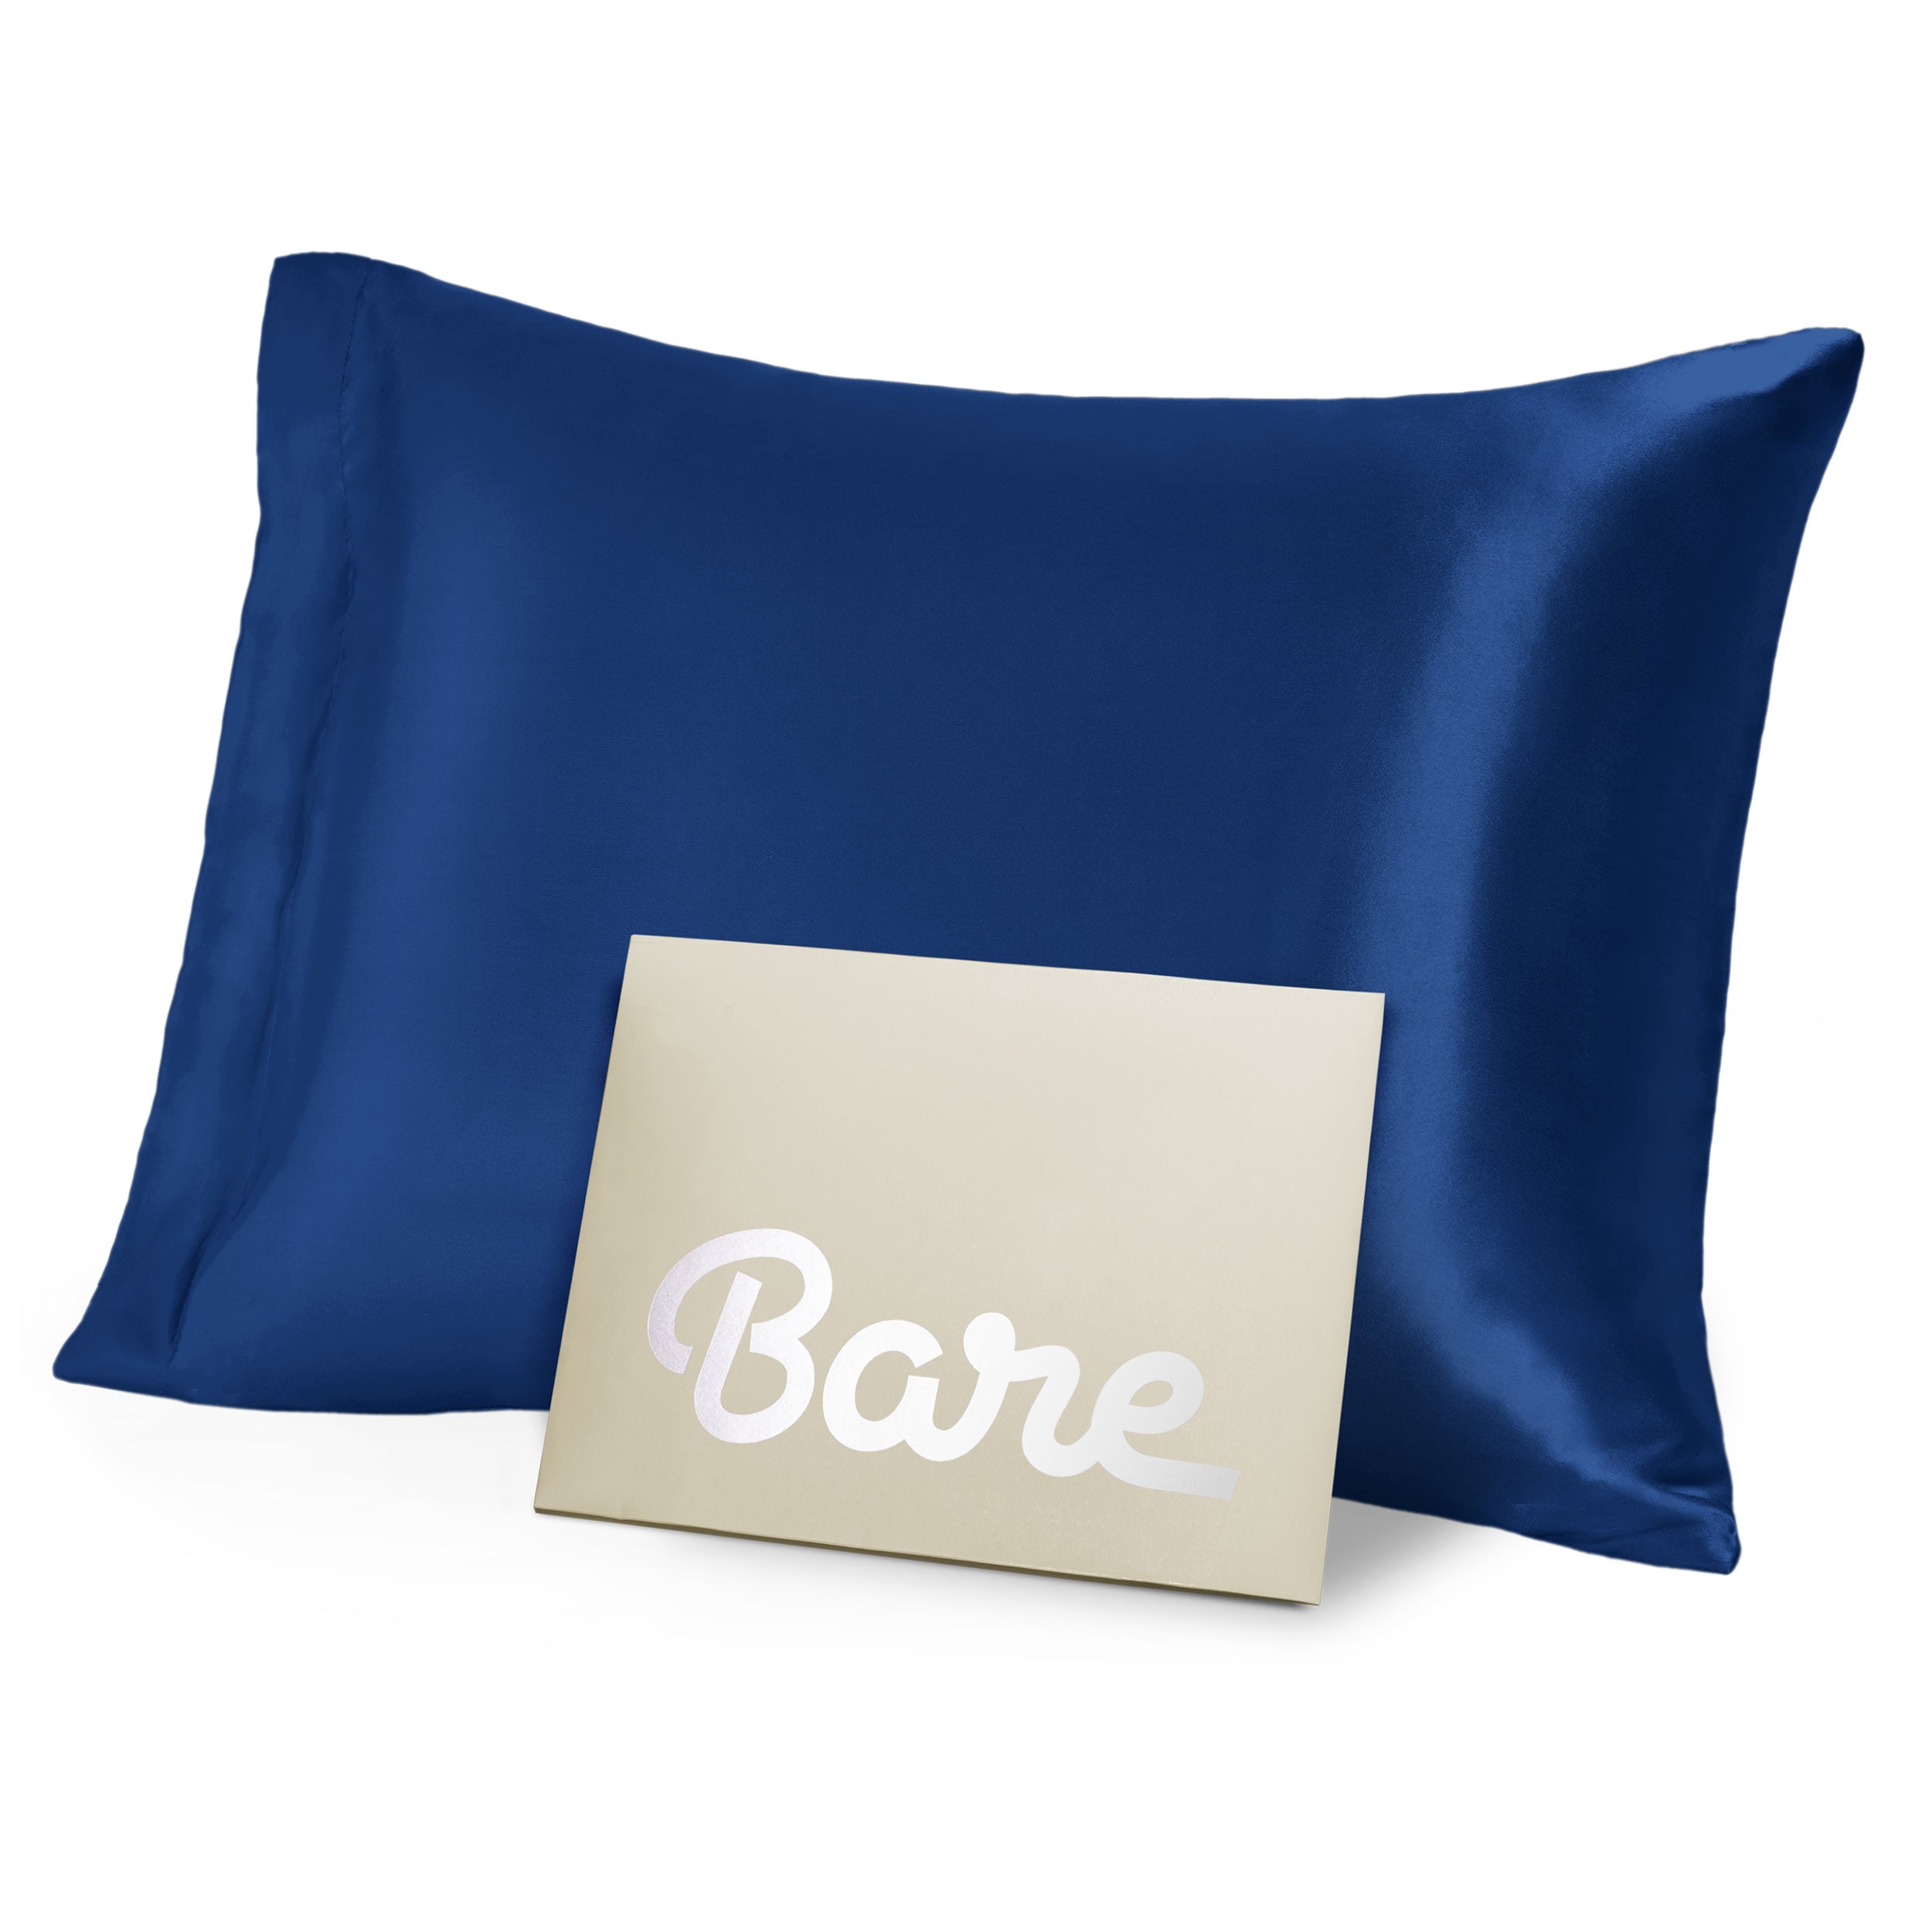 A dark blue mulberry silk pillowcase on a pillow